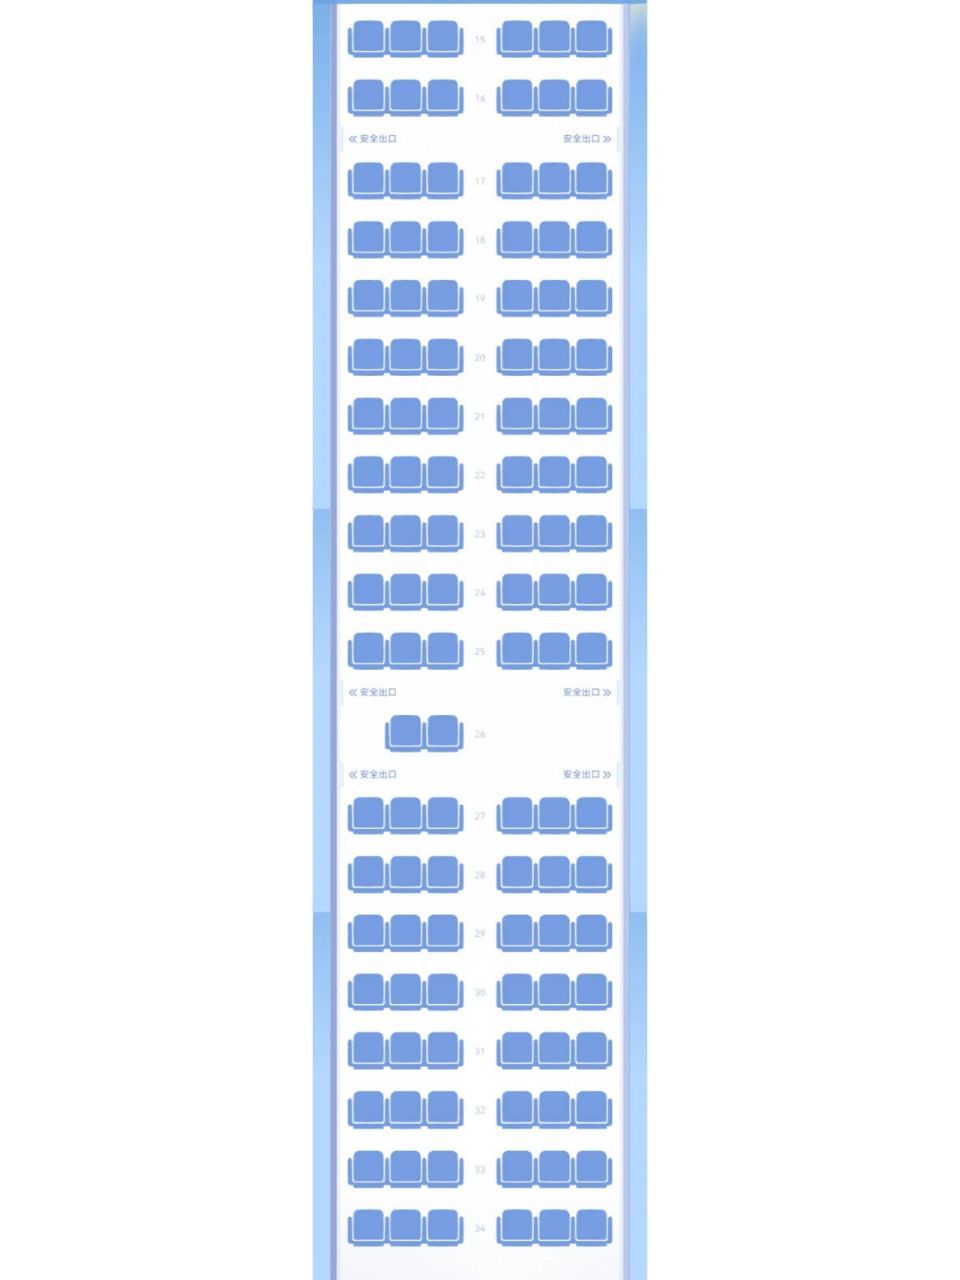 上航波音737(中)座位图图片